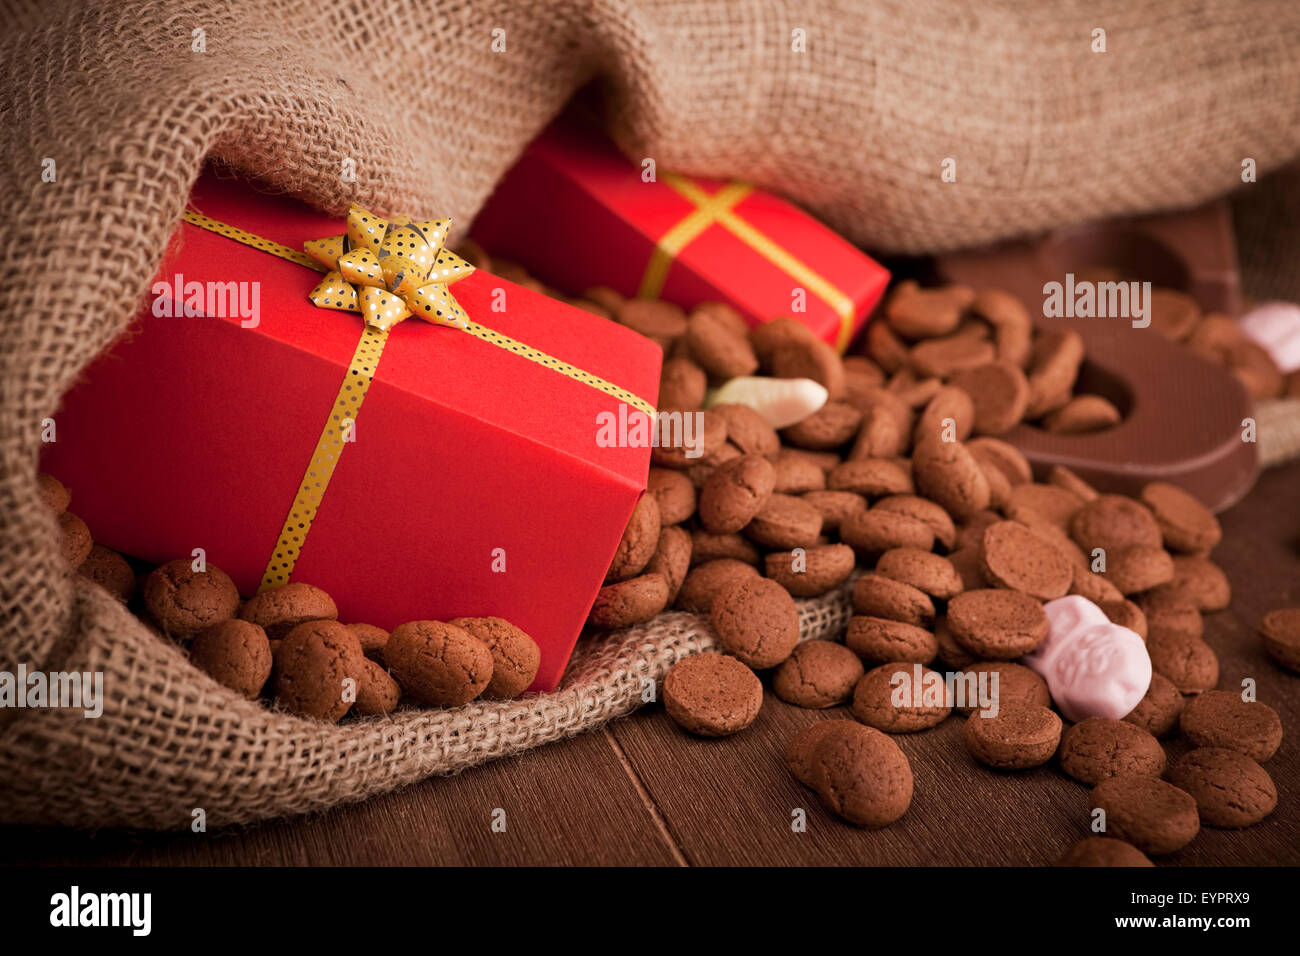 'De zak van Sinterklaas" (St. Nicholas' sac) rempli de 'pepernoten", une lettre de chocolat et bonbons. Une tradition néerlandaise. Banque D'Images